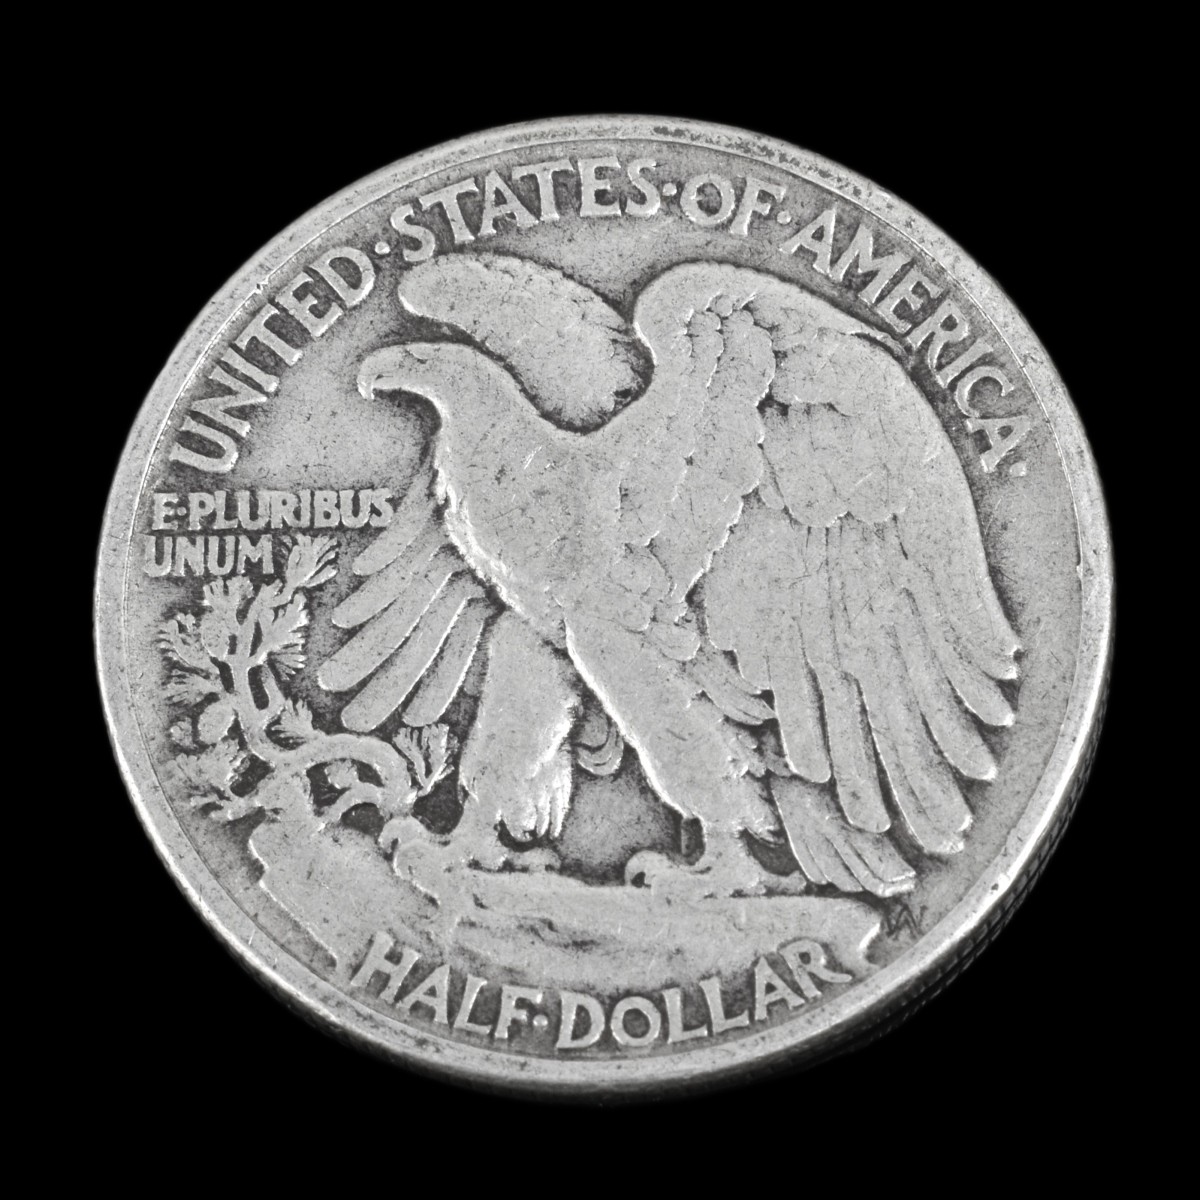 U.S. Silver Kennedy Half Dollars